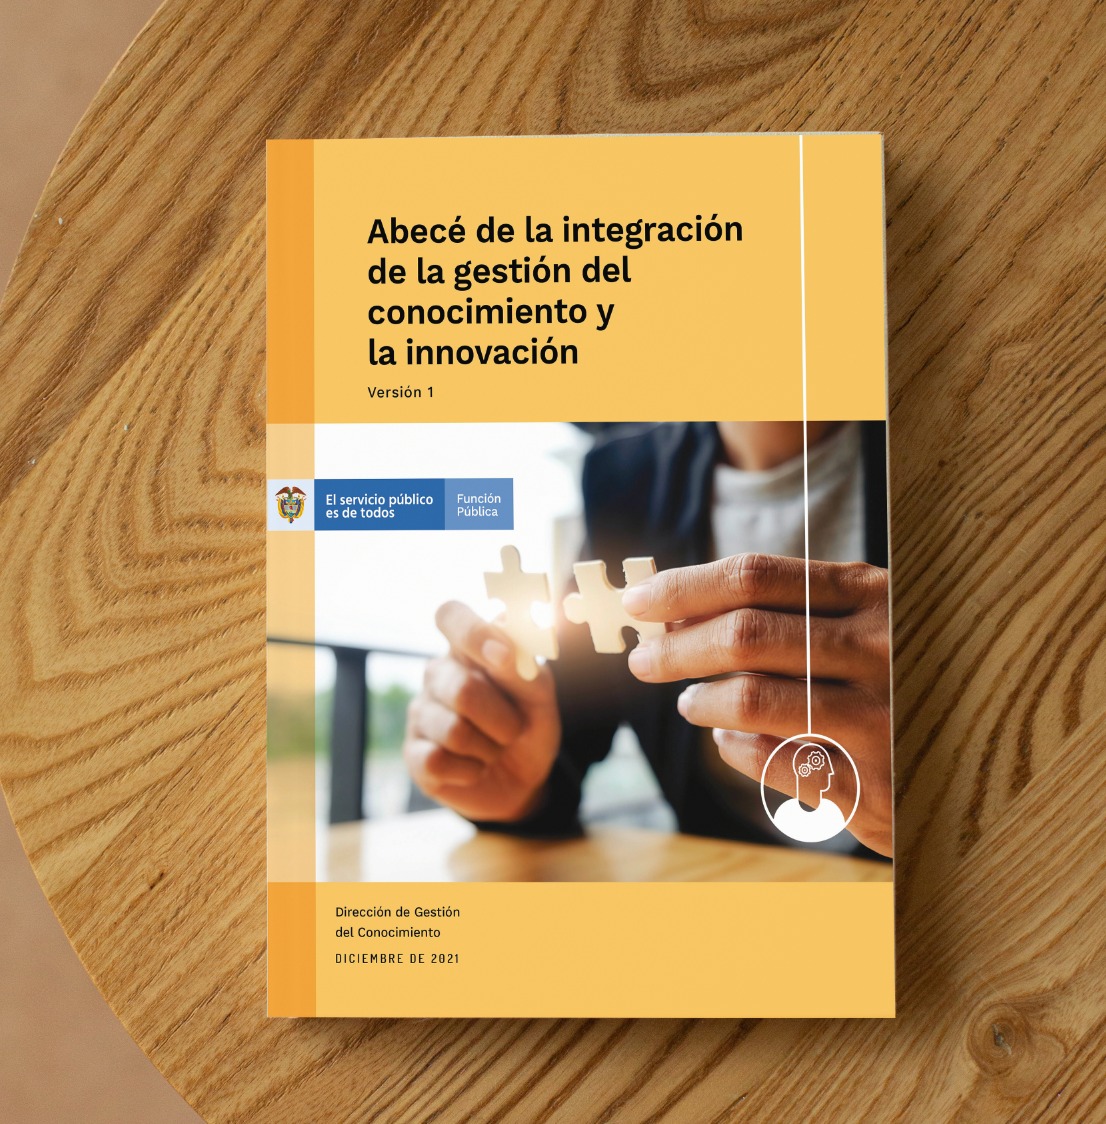 Contamos con una nueva publicación de Función Publica | Abecé de la integración de la gestión del conocimiento y la innovación